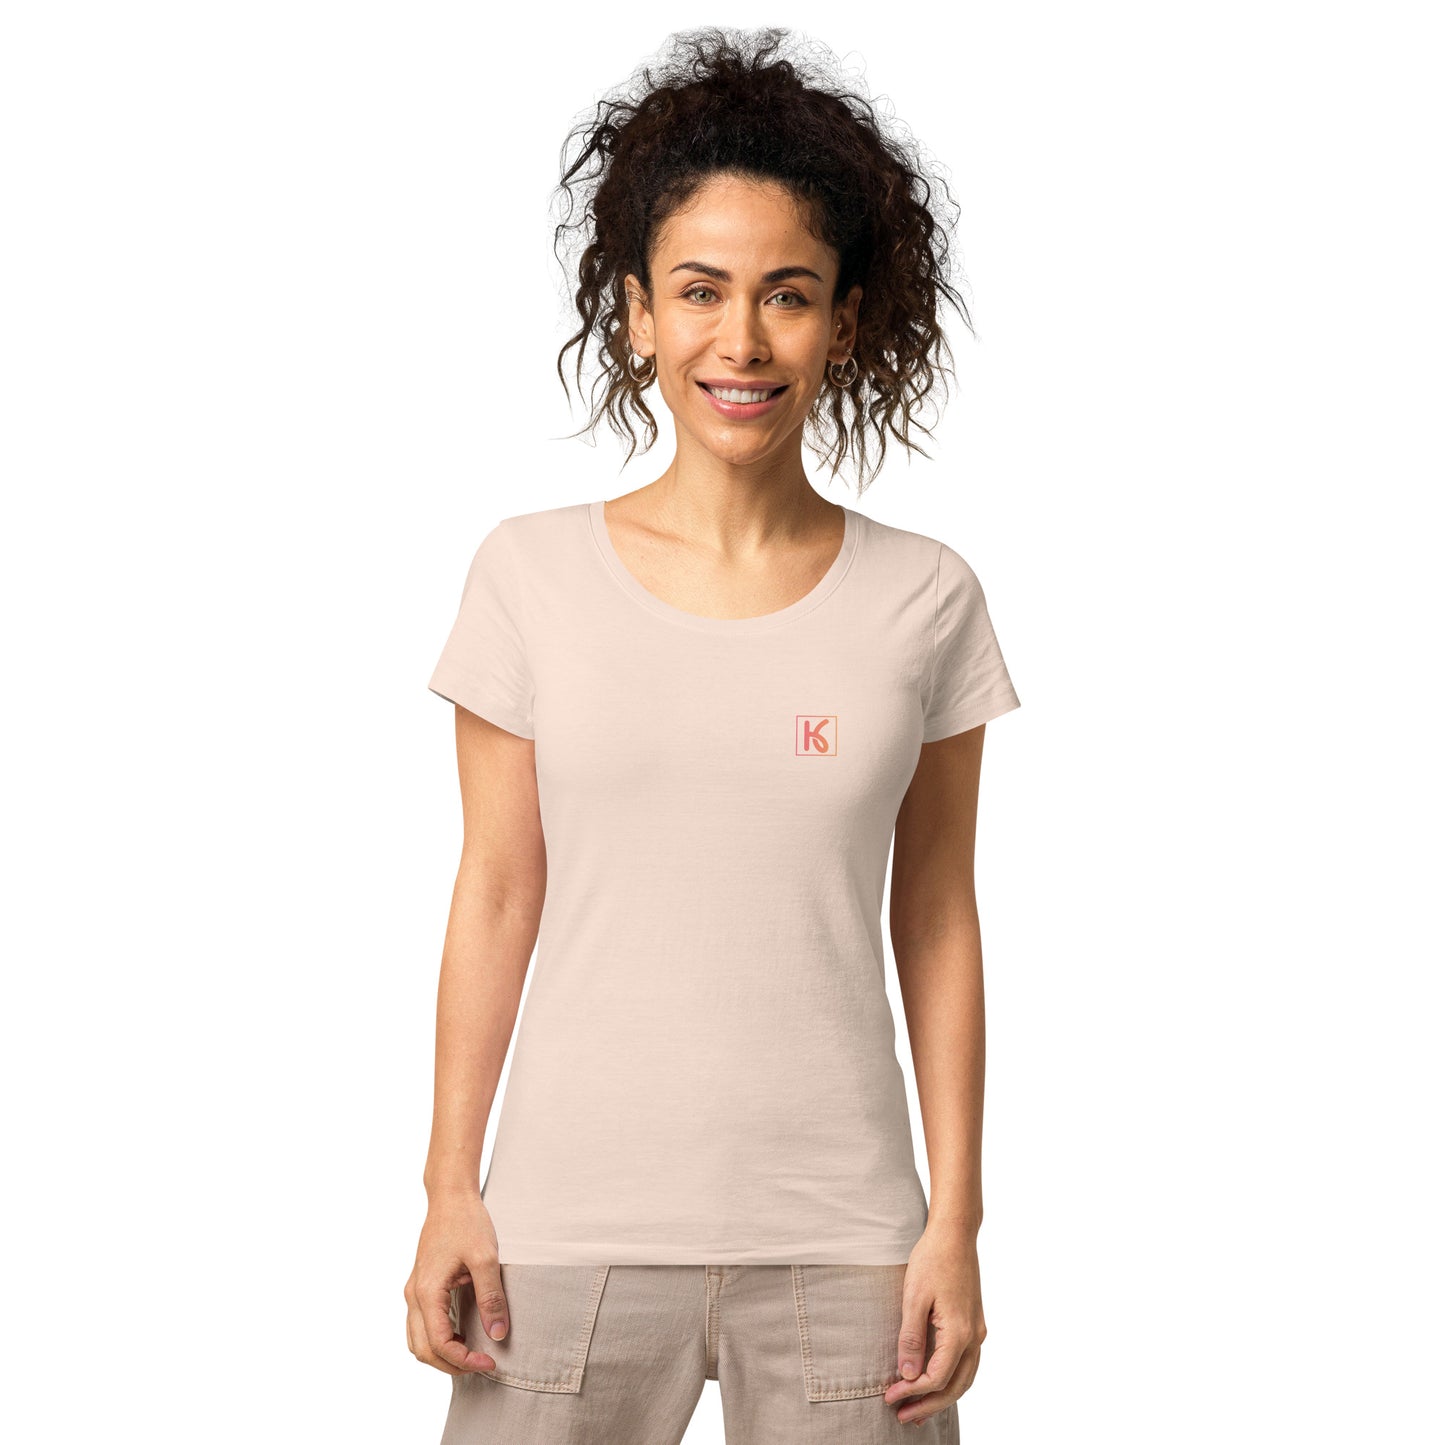 Camiseta básica para mujer Rosa (Kiya)